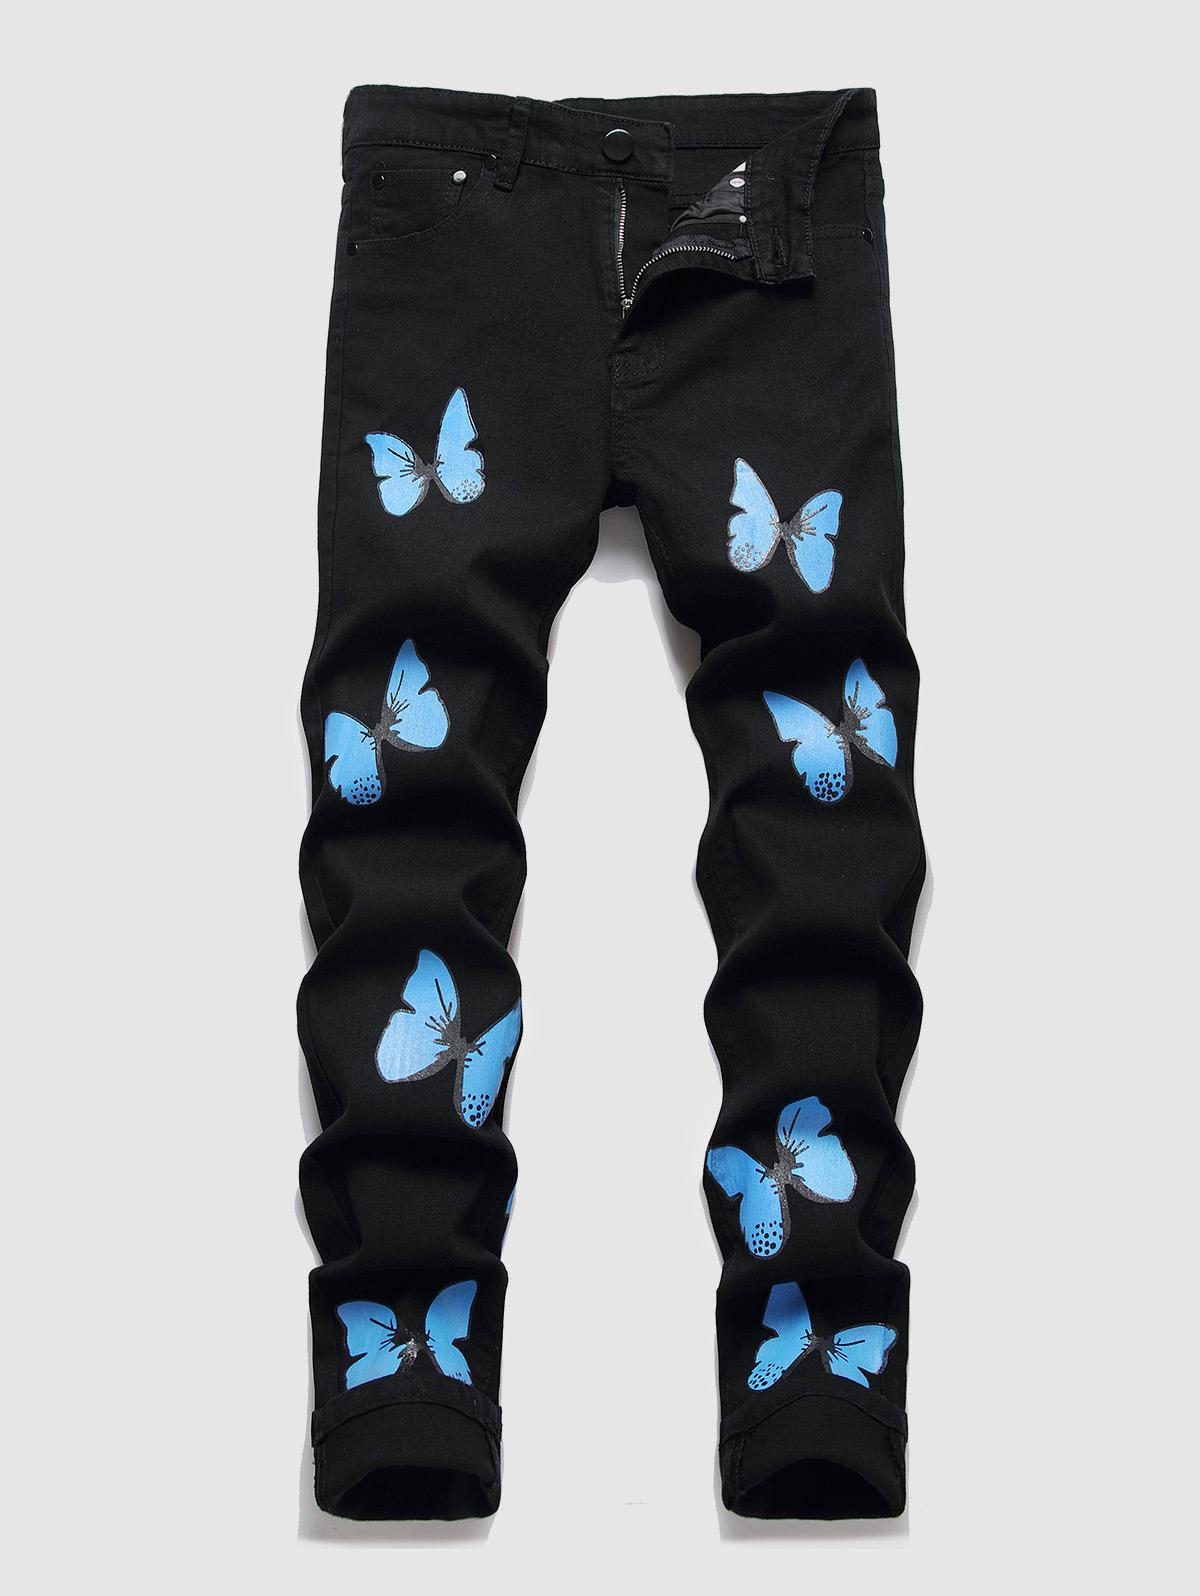 ZAFUL Men's Butterfly Pattern Straight Leg Jeans 34 Black